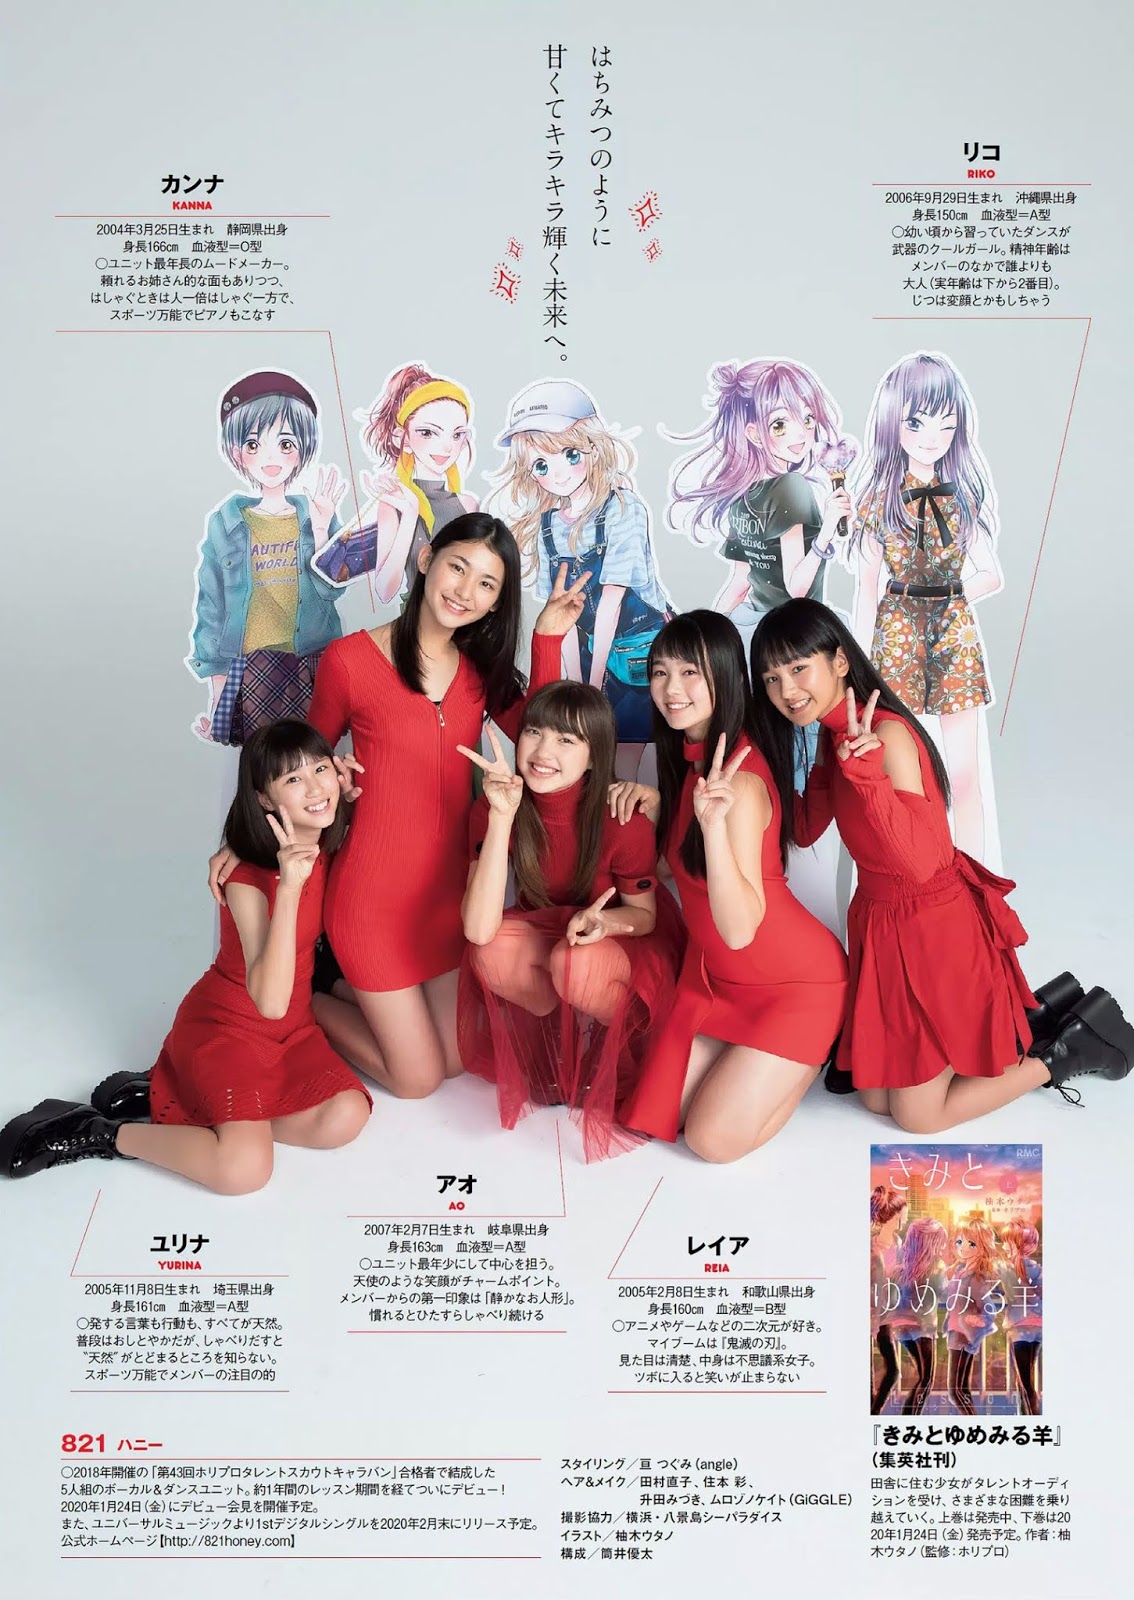 821（ハニー）, Weekly Playboy 2019 No.51 (週刊プレイボーイ 2019年51号)